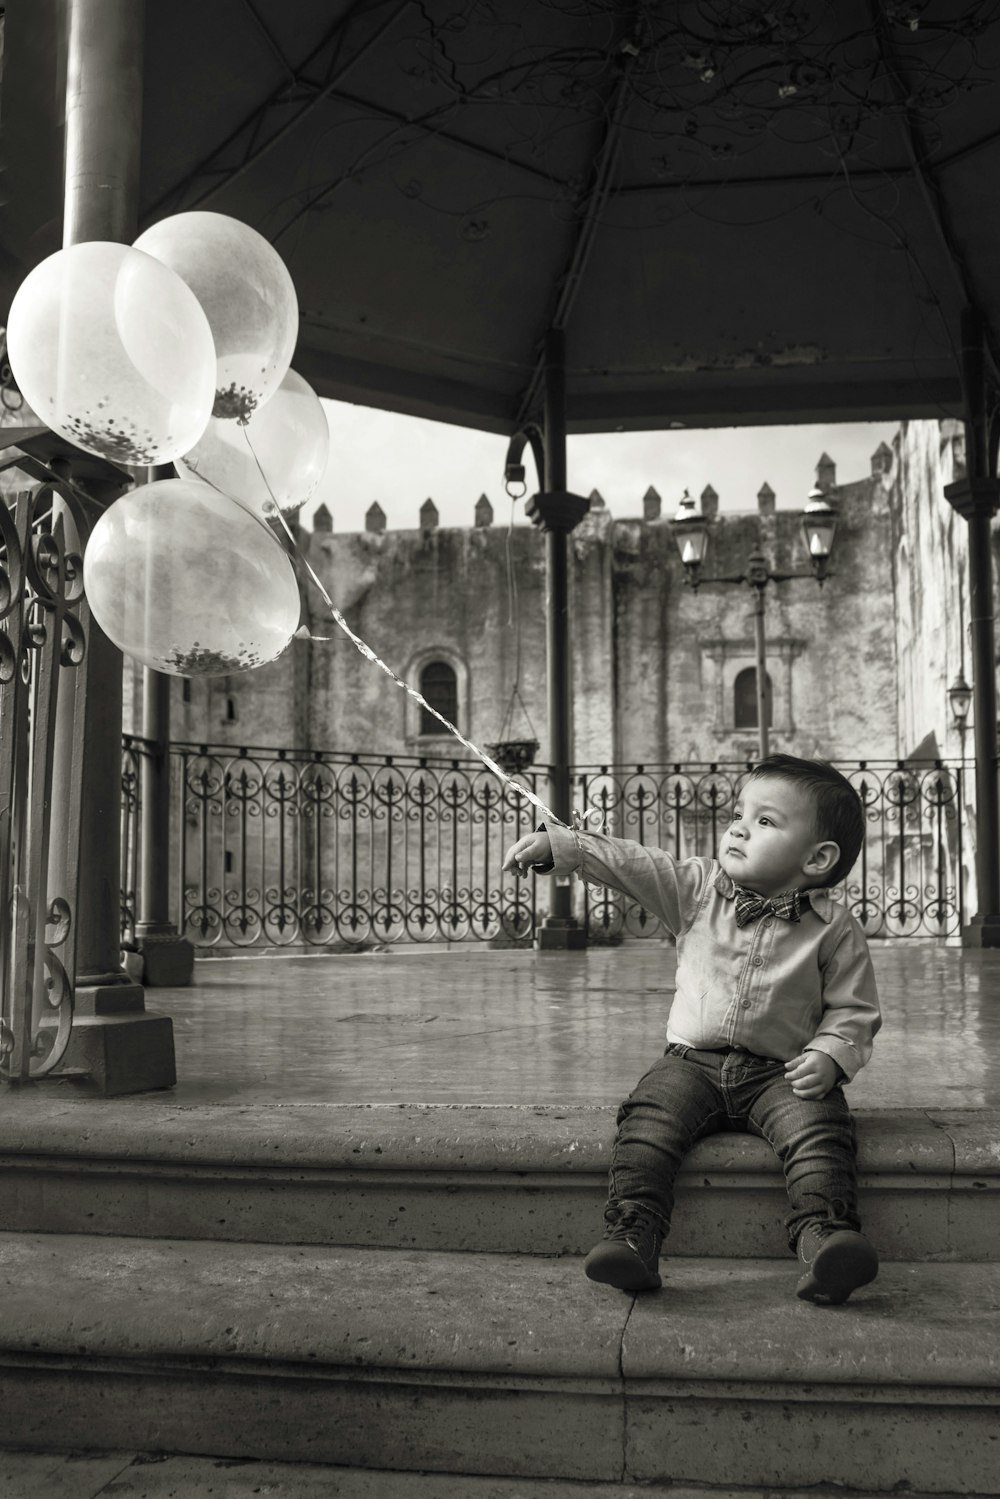 fotografia in scala di grigi di un ragazzo che tiene palloncini